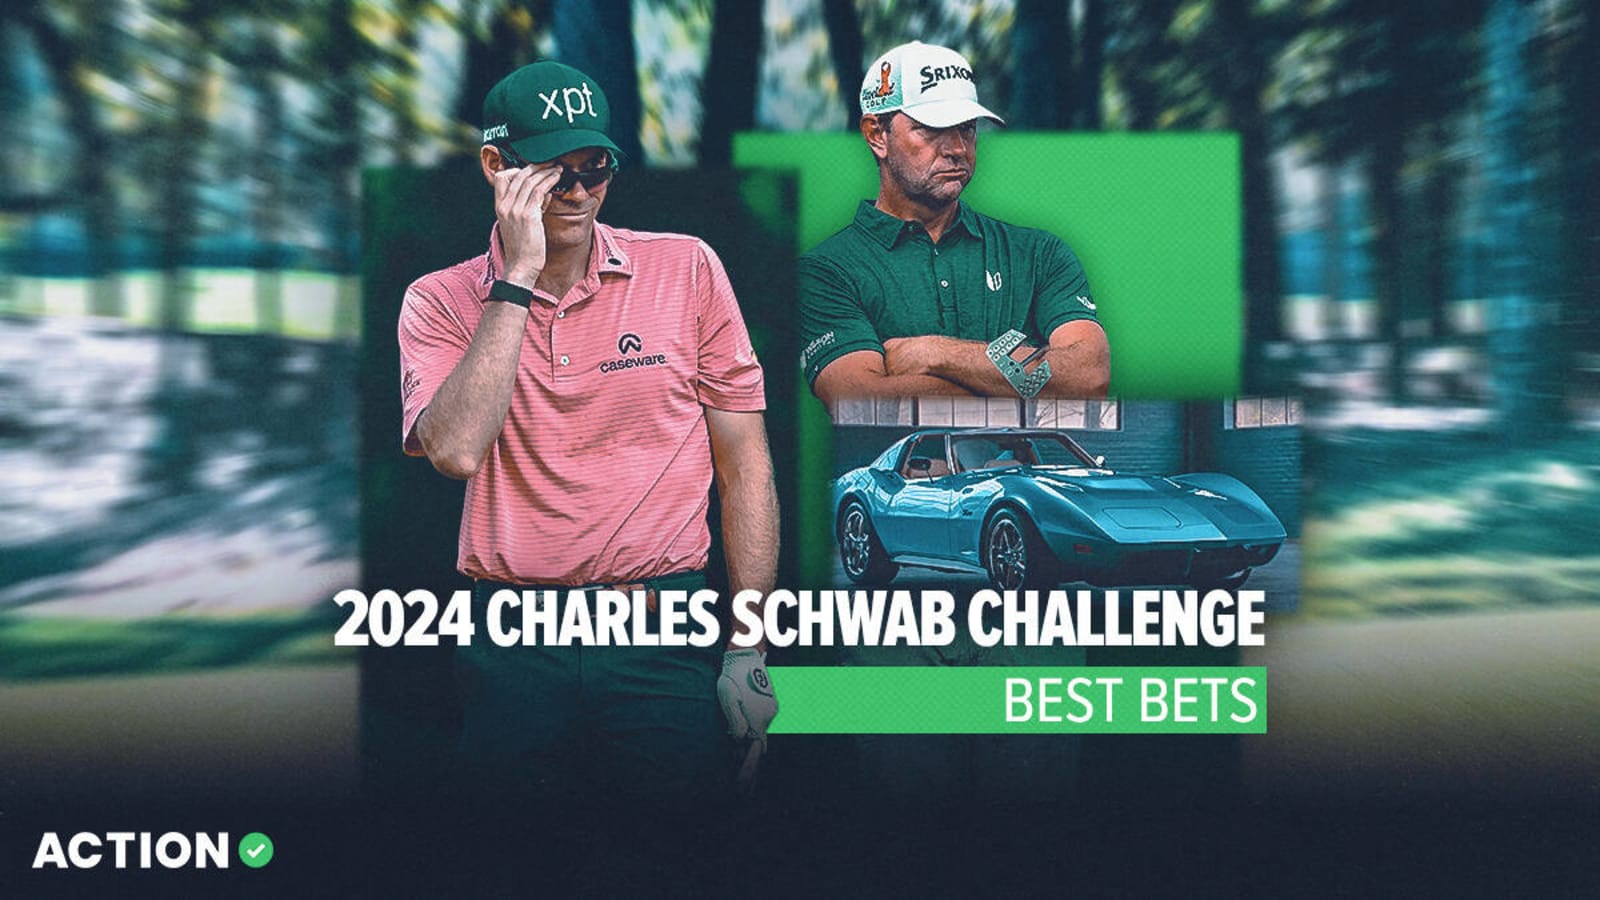 2024 Charles Schwab Challenge best bets, expert picks for Adam Schenk and more